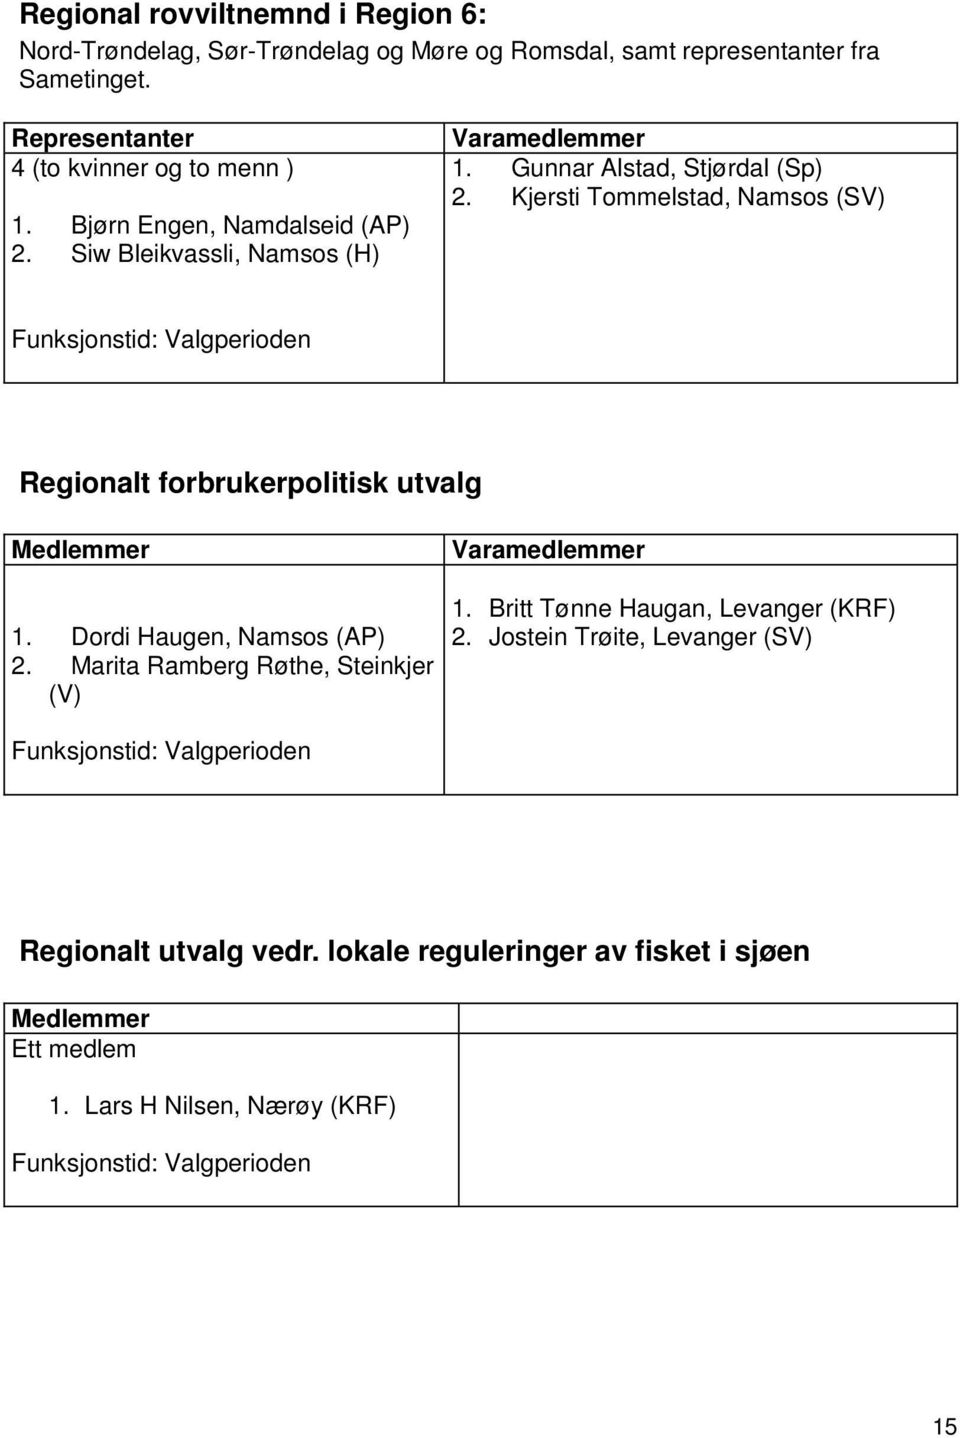 Kjersti Tommelstad, Namsos (SV) Regionalt forbrukerpolitisk utvalg 1. Dordi Haugen, Namsos (AP) 2. Marita Ramberg Røthe, Steinkjer (V) 1.